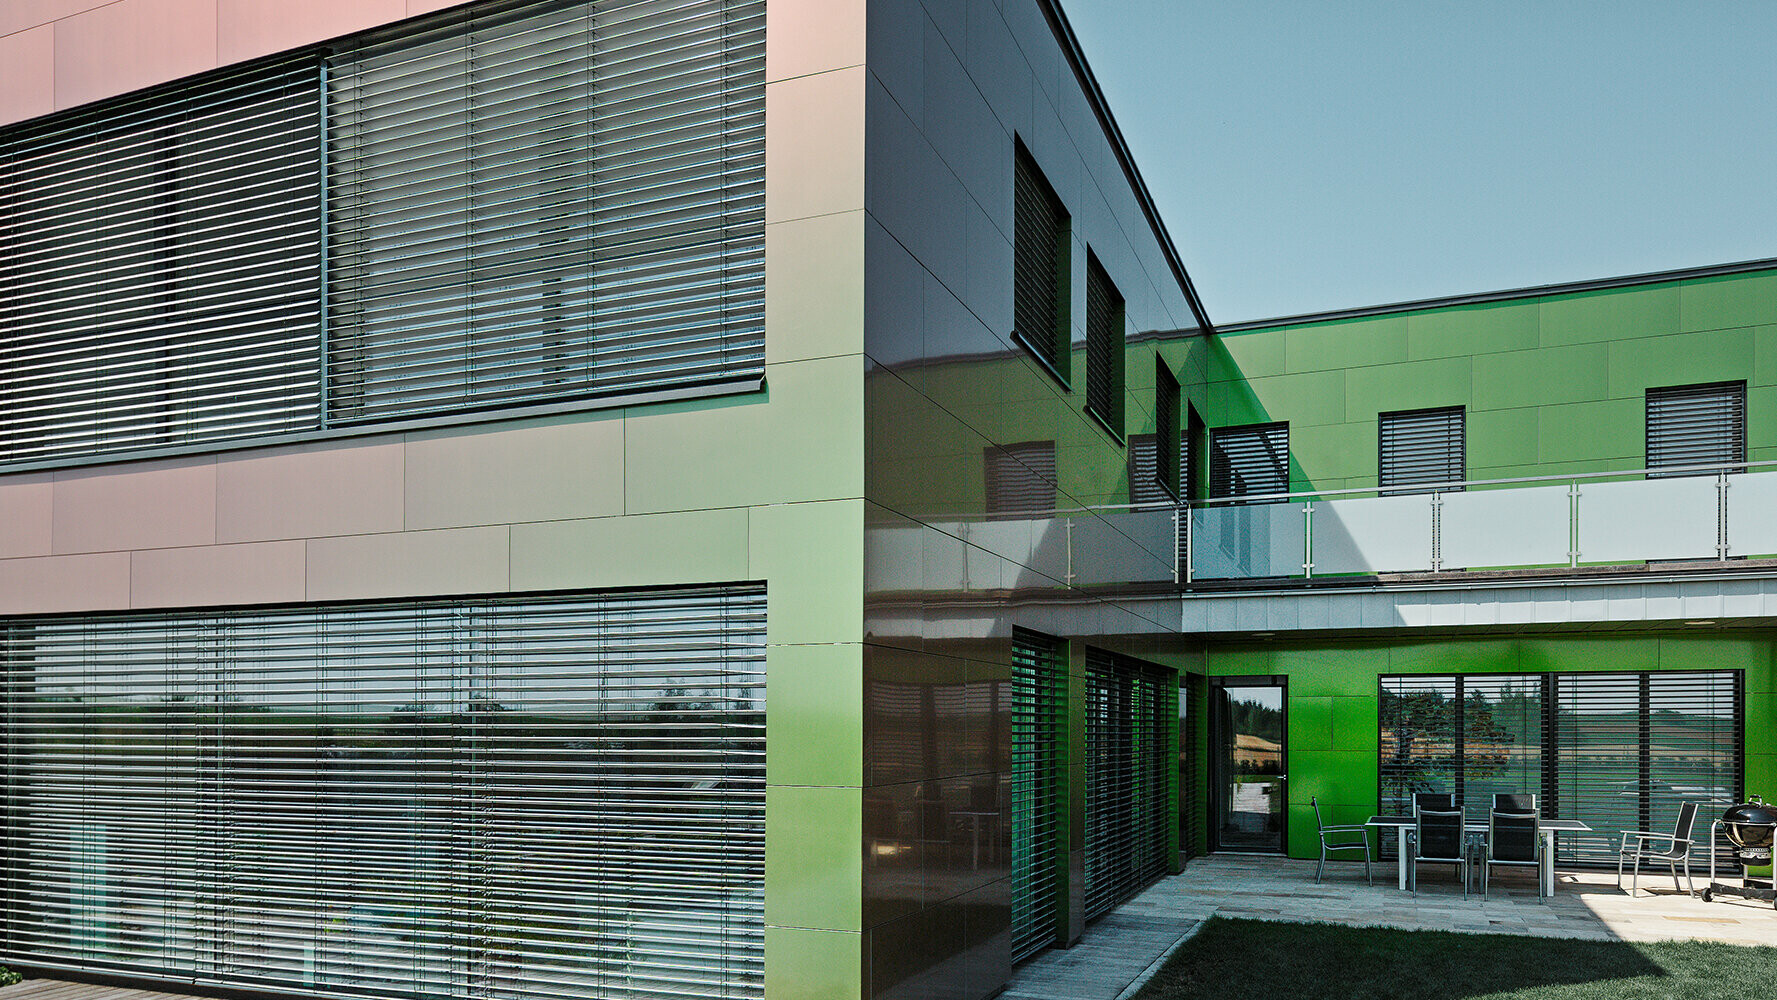 La facciata con pannelli compositi di questa abitazione è marrone, verde o viola scuro a seconda della luce e della prospettiva.